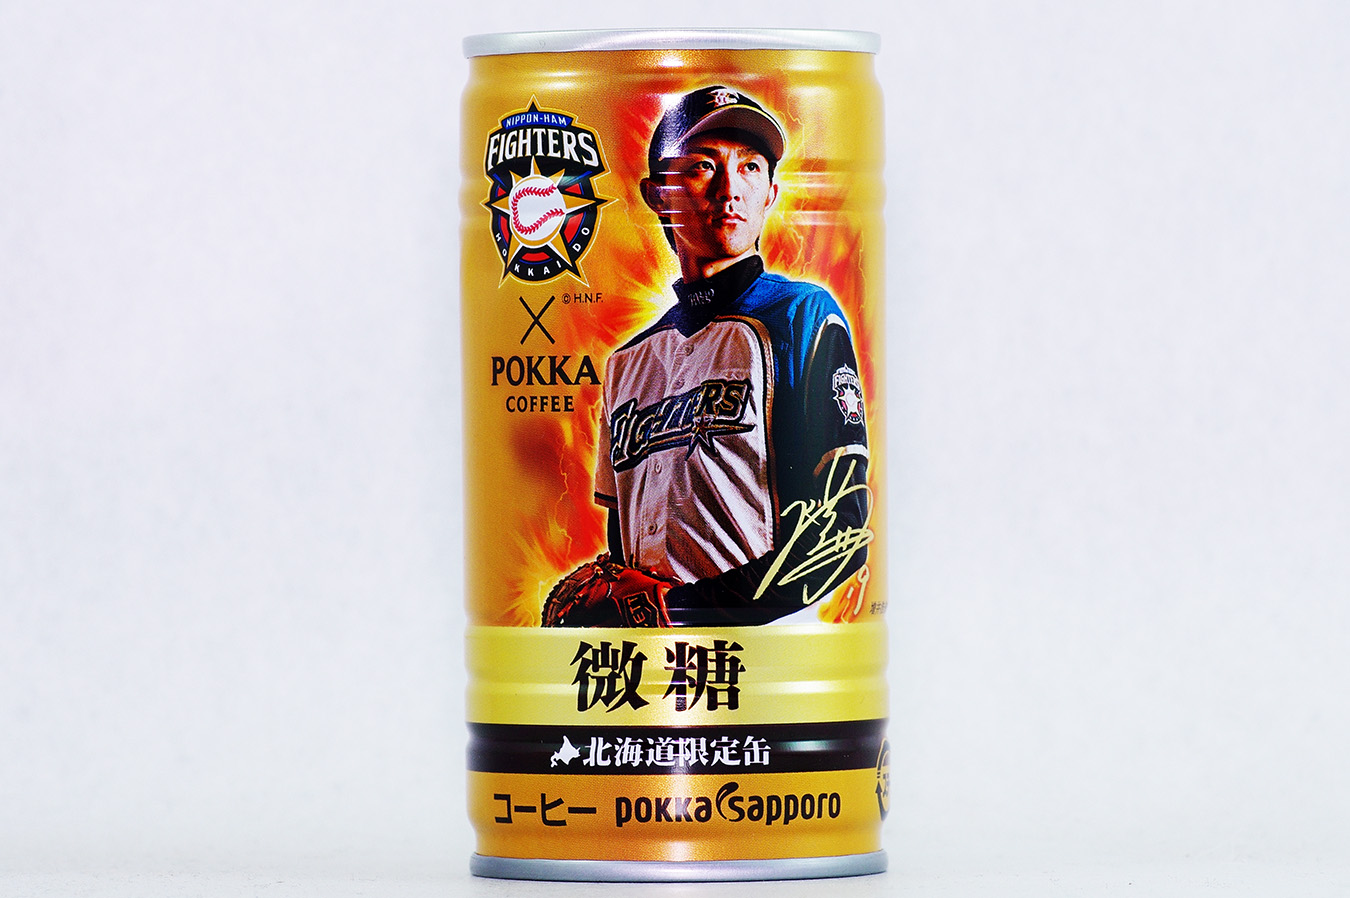 ポッカコーヒー ファイターズ2016年選手缶 微糖 増井浩俊選手 2016年8月